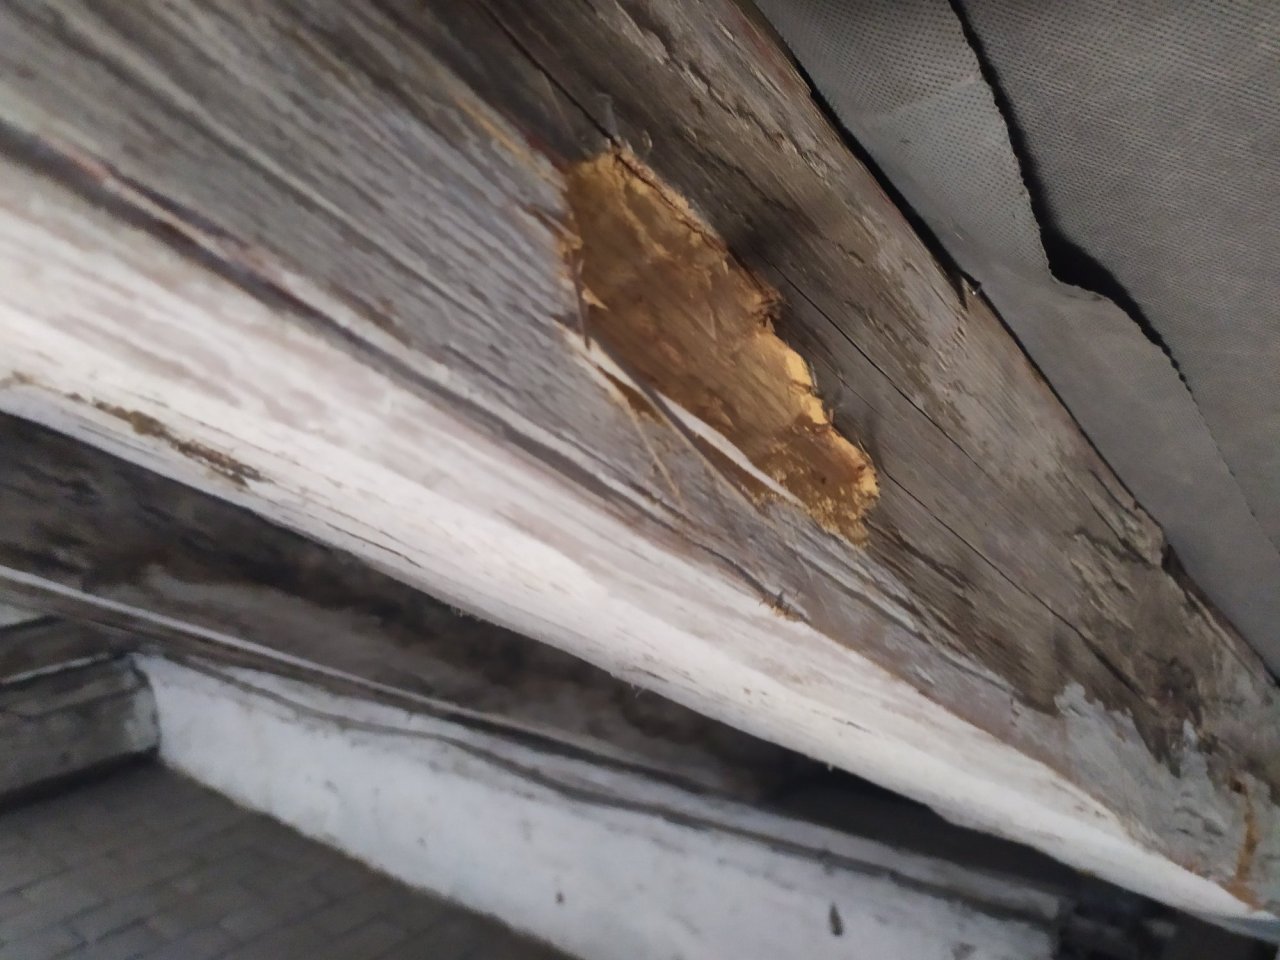 Viditelné poškození dřevěného trámu s důlkem a vypadávající dřevní hmotou, známky aktivního napadení krovu dřevokazným hmyzem.